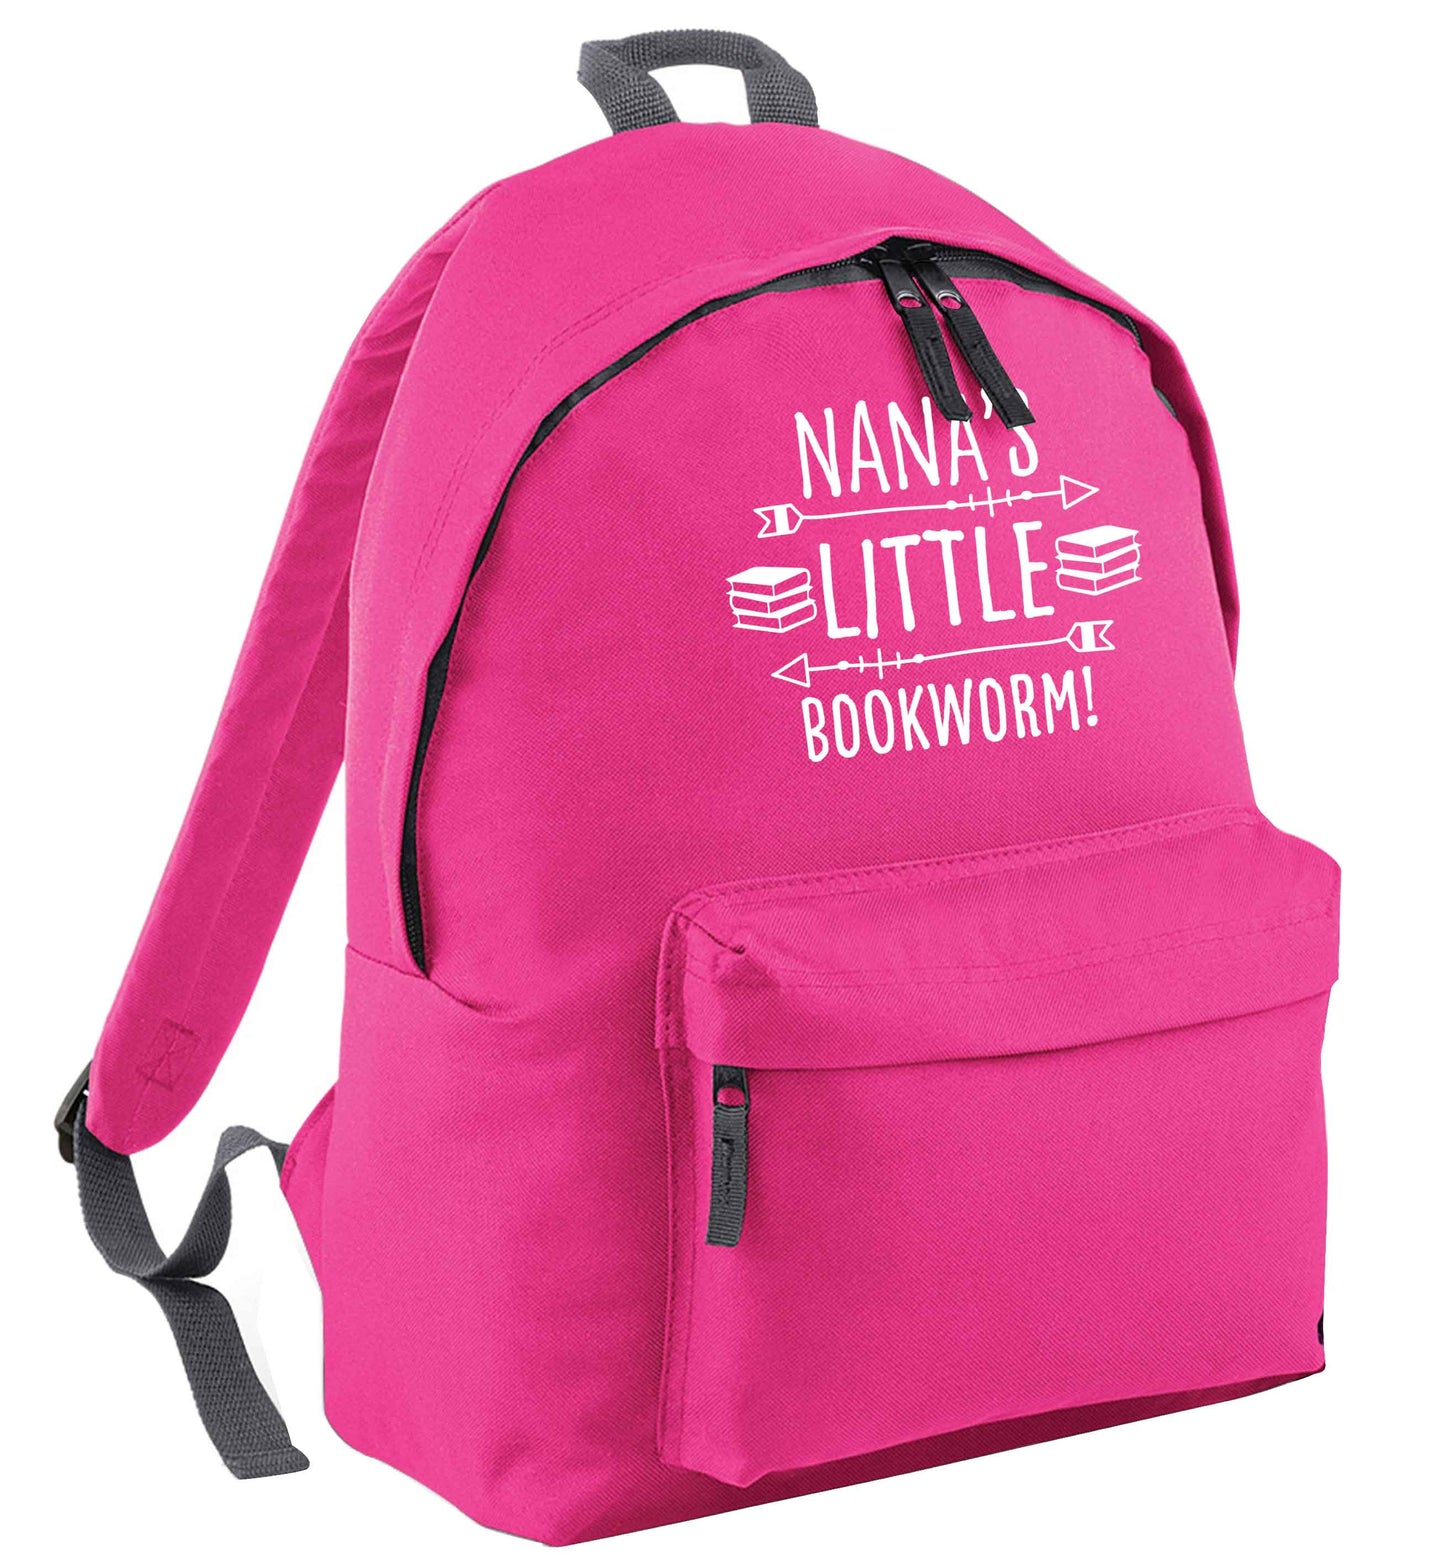 Grandad's little bookworm | Children's backpack